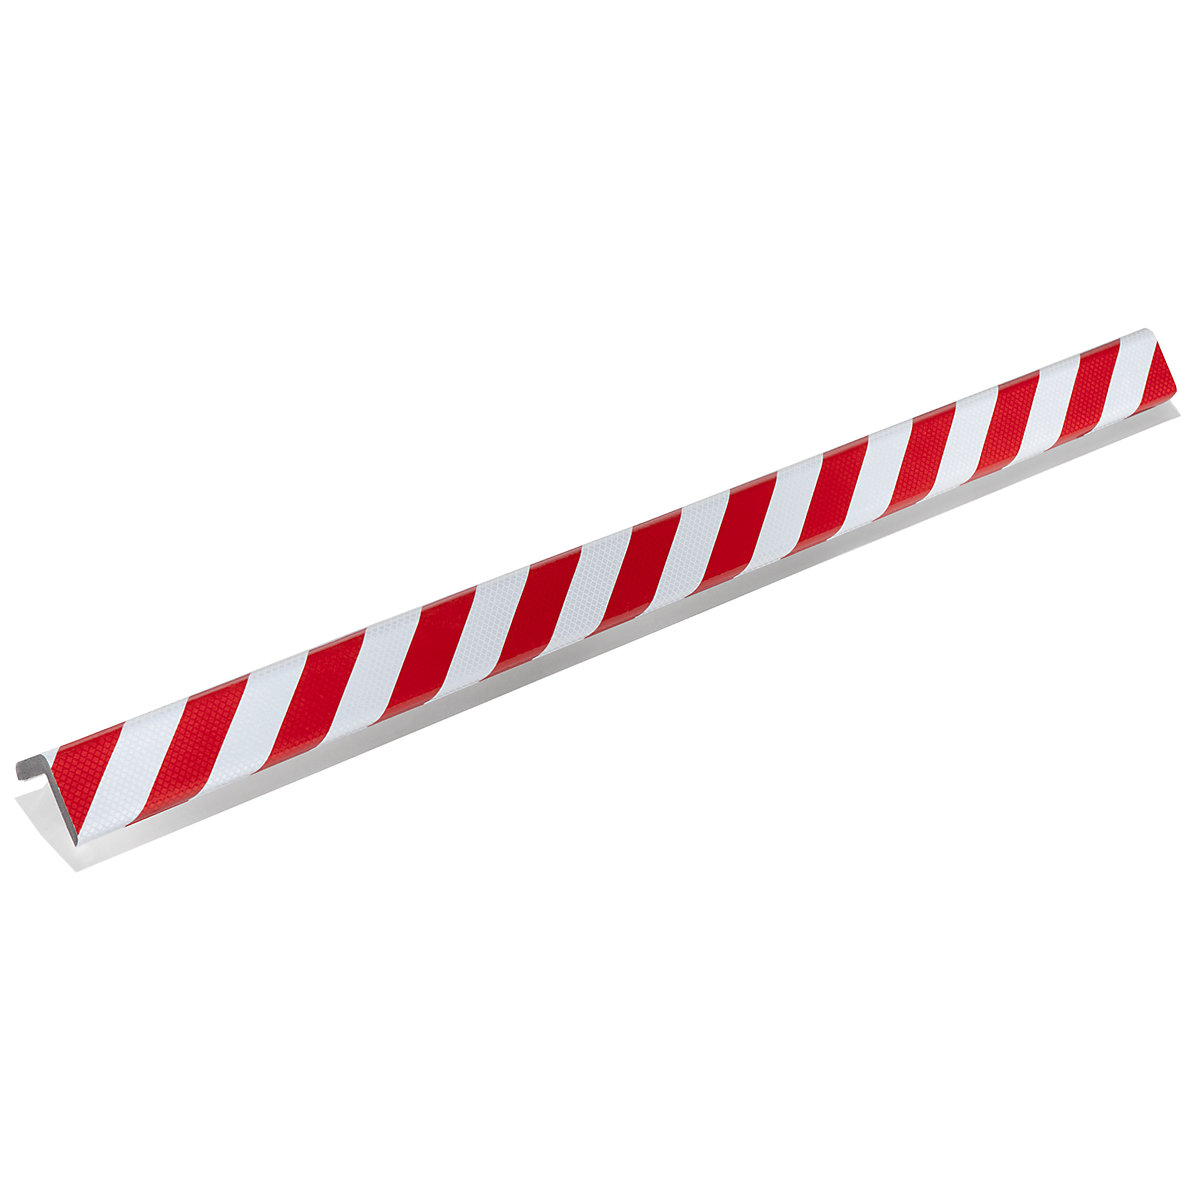 Protección de esquinas Knuffi® – SHG, tipo H+, pieza de 1 m, en rojo y blanco retrorreflectante-14